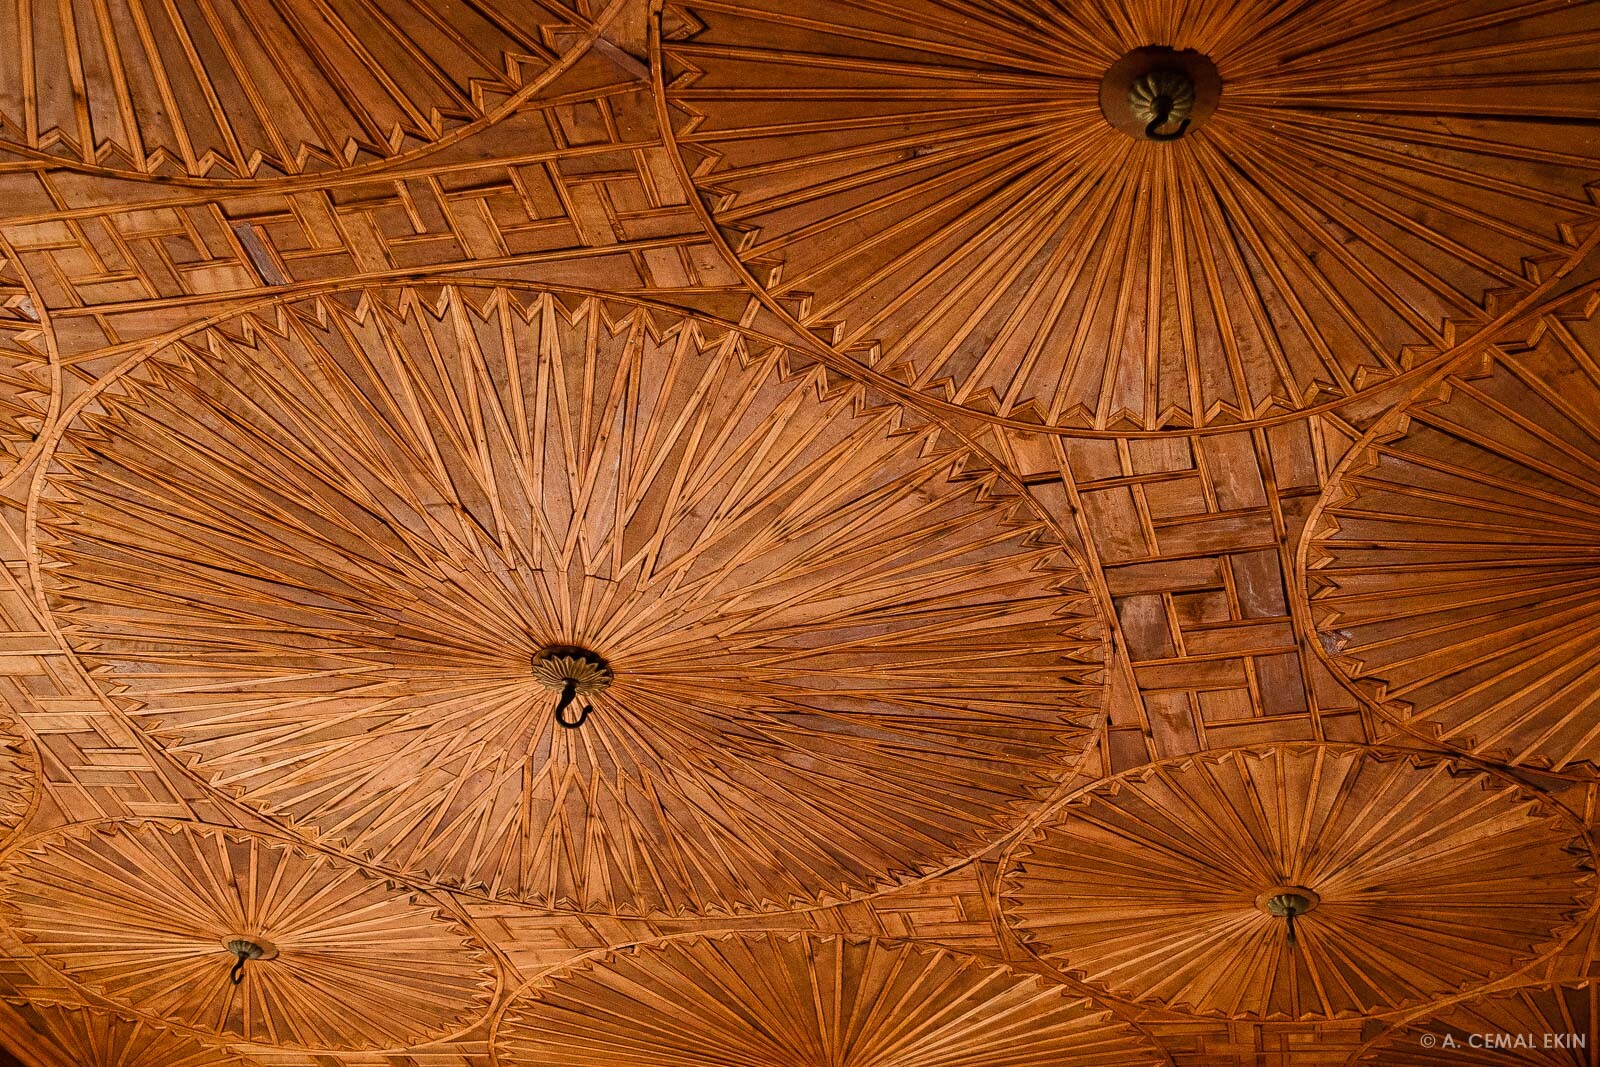 Gökçüoğlu Summer Mansion ceiling detail